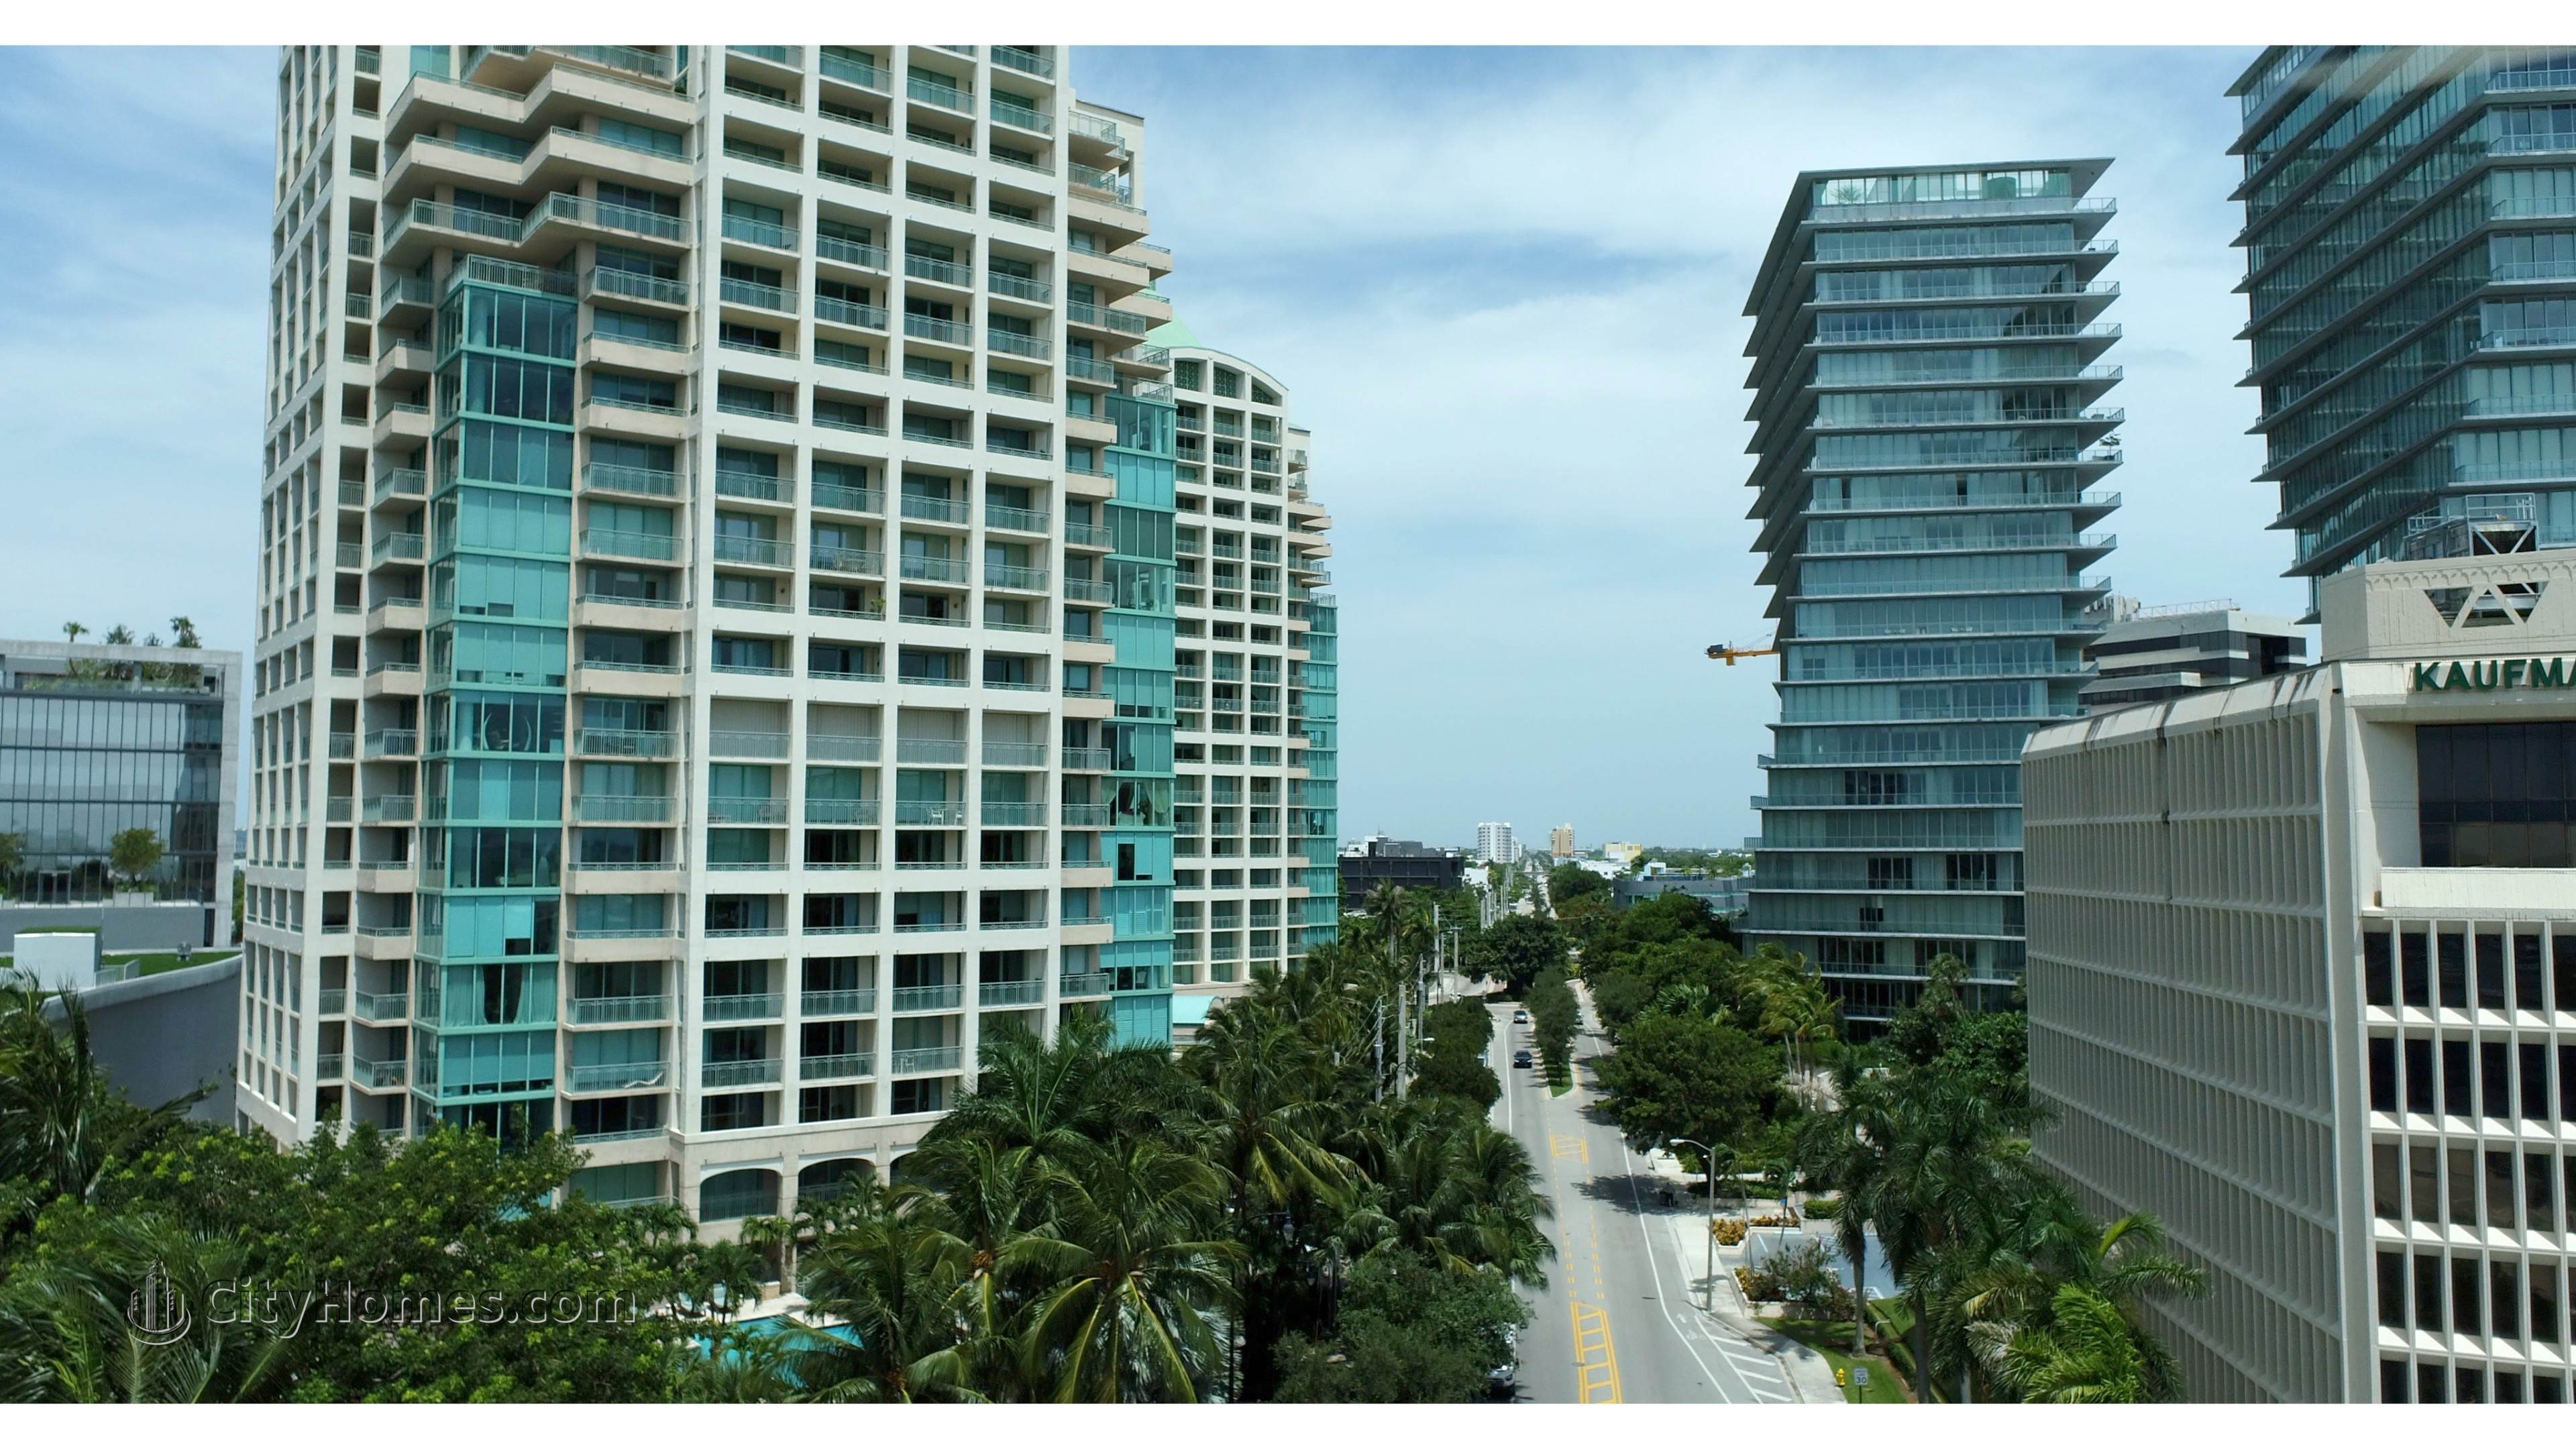 2. Ritz-Carlton Coconut Grove bâtiment à 3300 And 3350 SW 27th Avenue, Miami, FL 33133